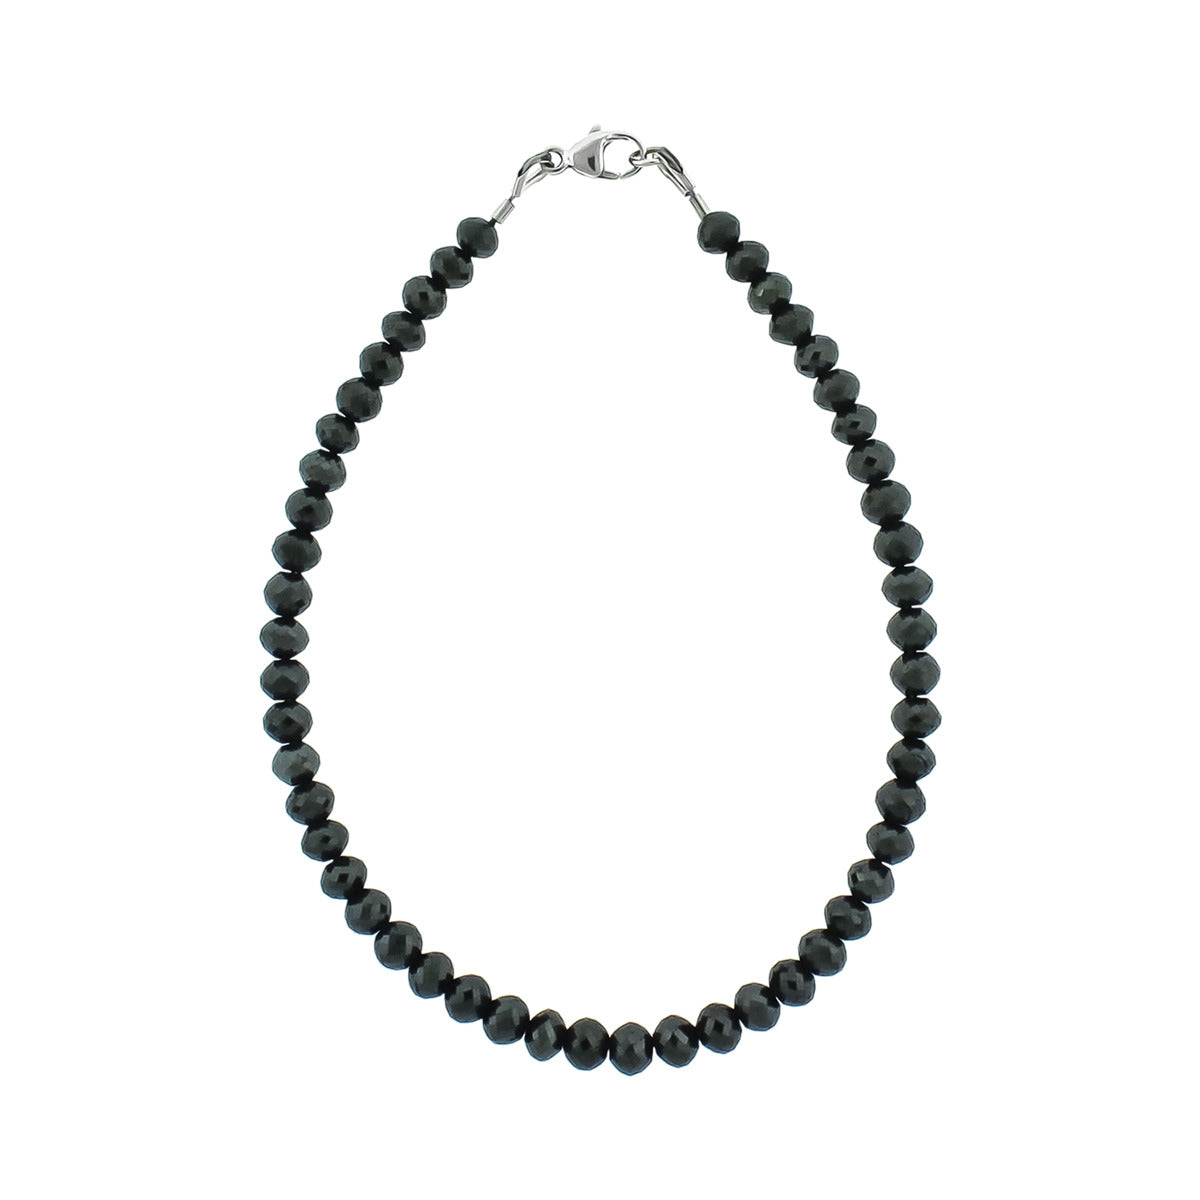 22K Gold 'Om' Bracelet with Diamond & Black Beads For Women - 1-1-GBR2530  in 8.750 Grams